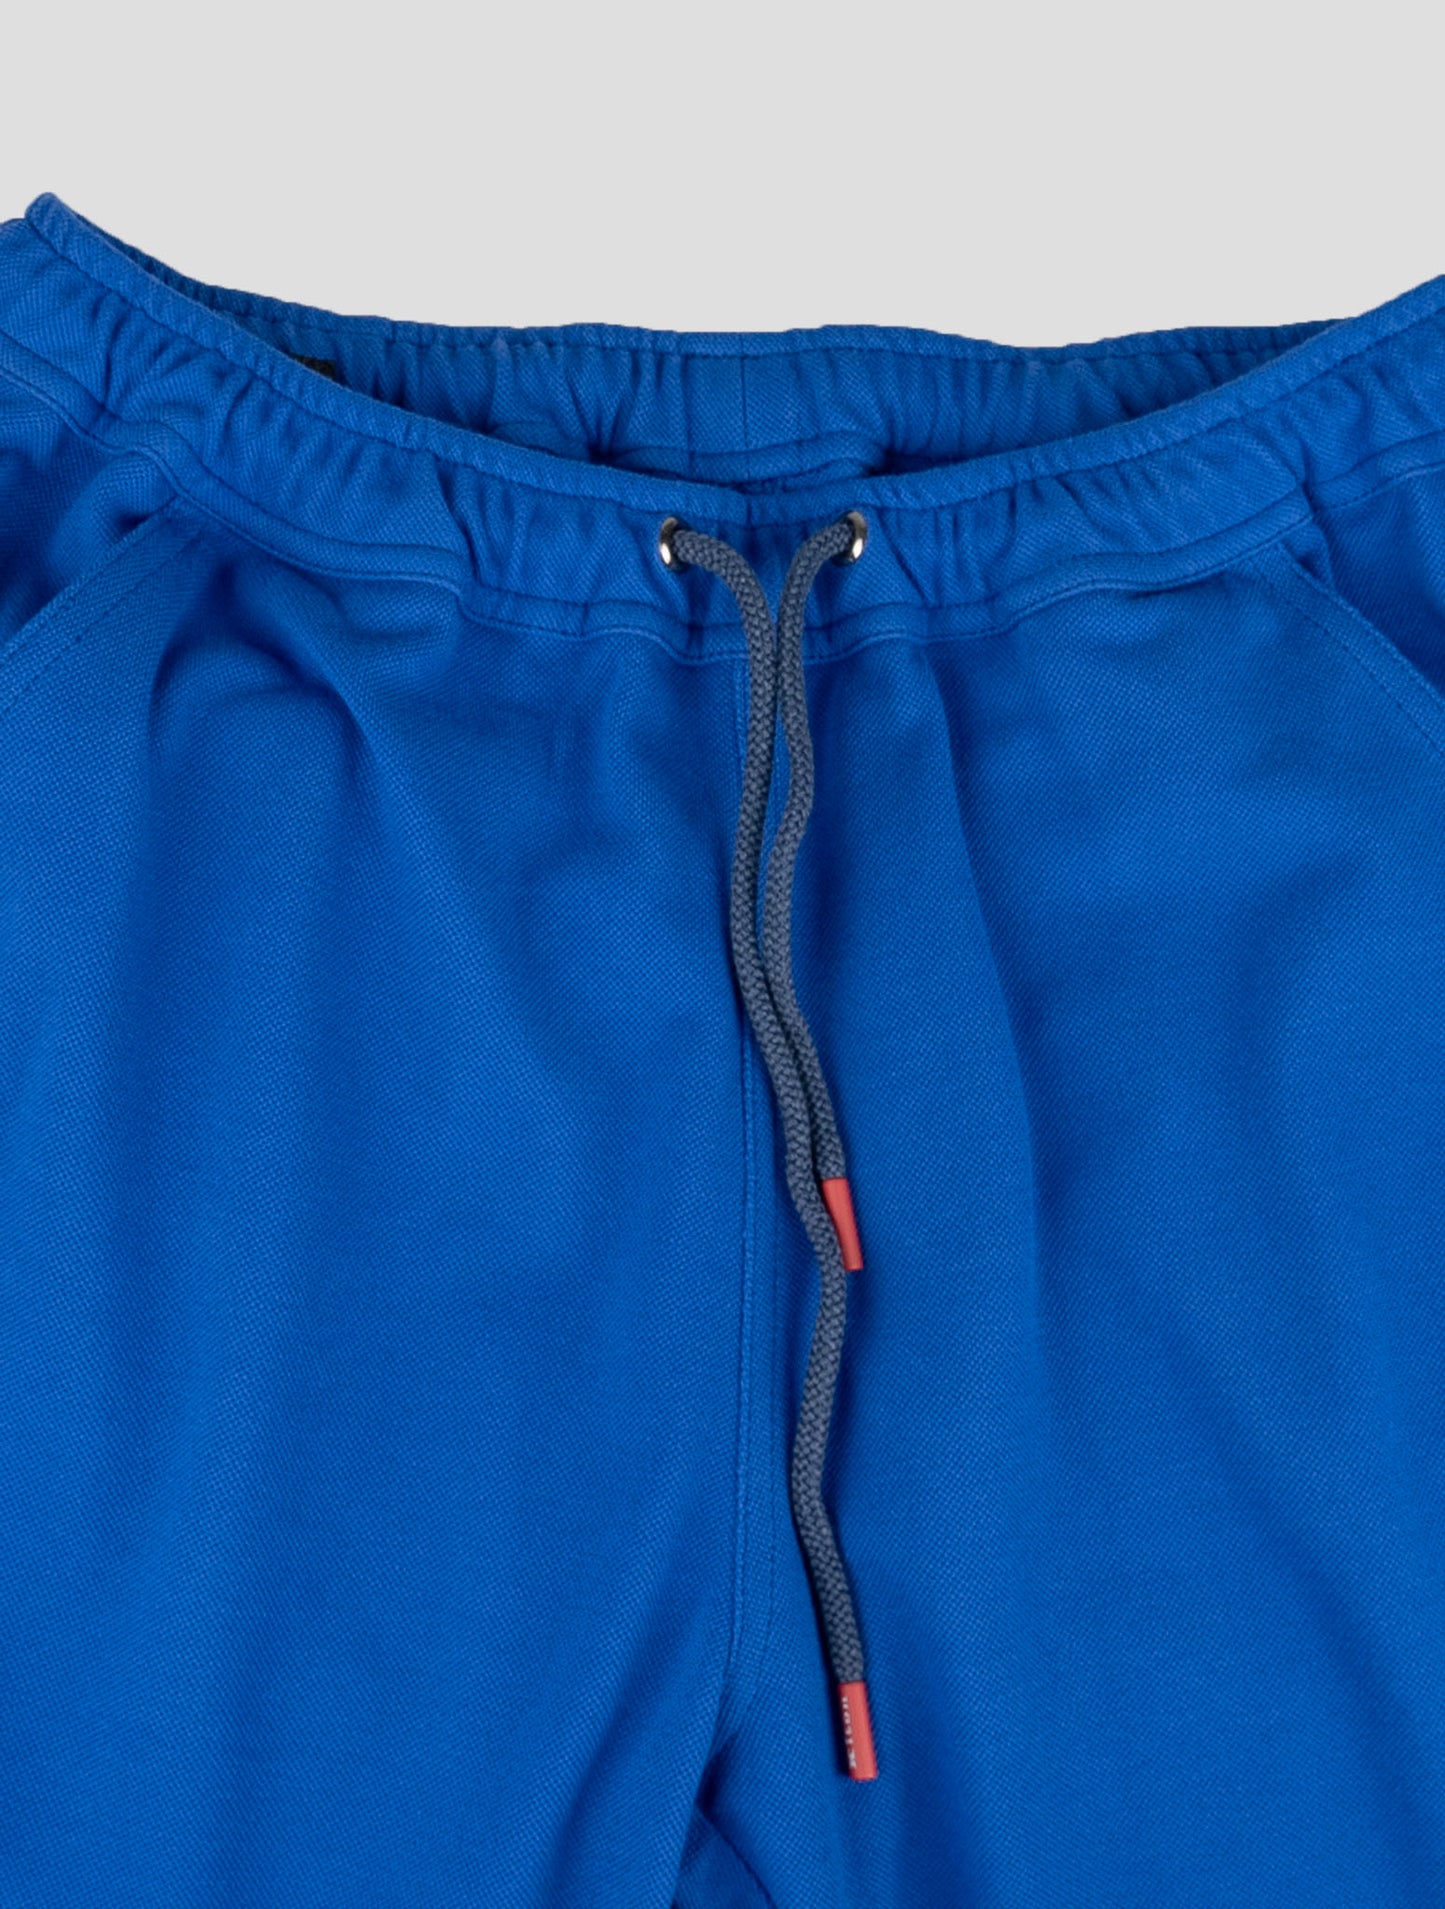 Kiton Matching Outfit - Sort Umbi og Blue Short Pants Træningsdragt